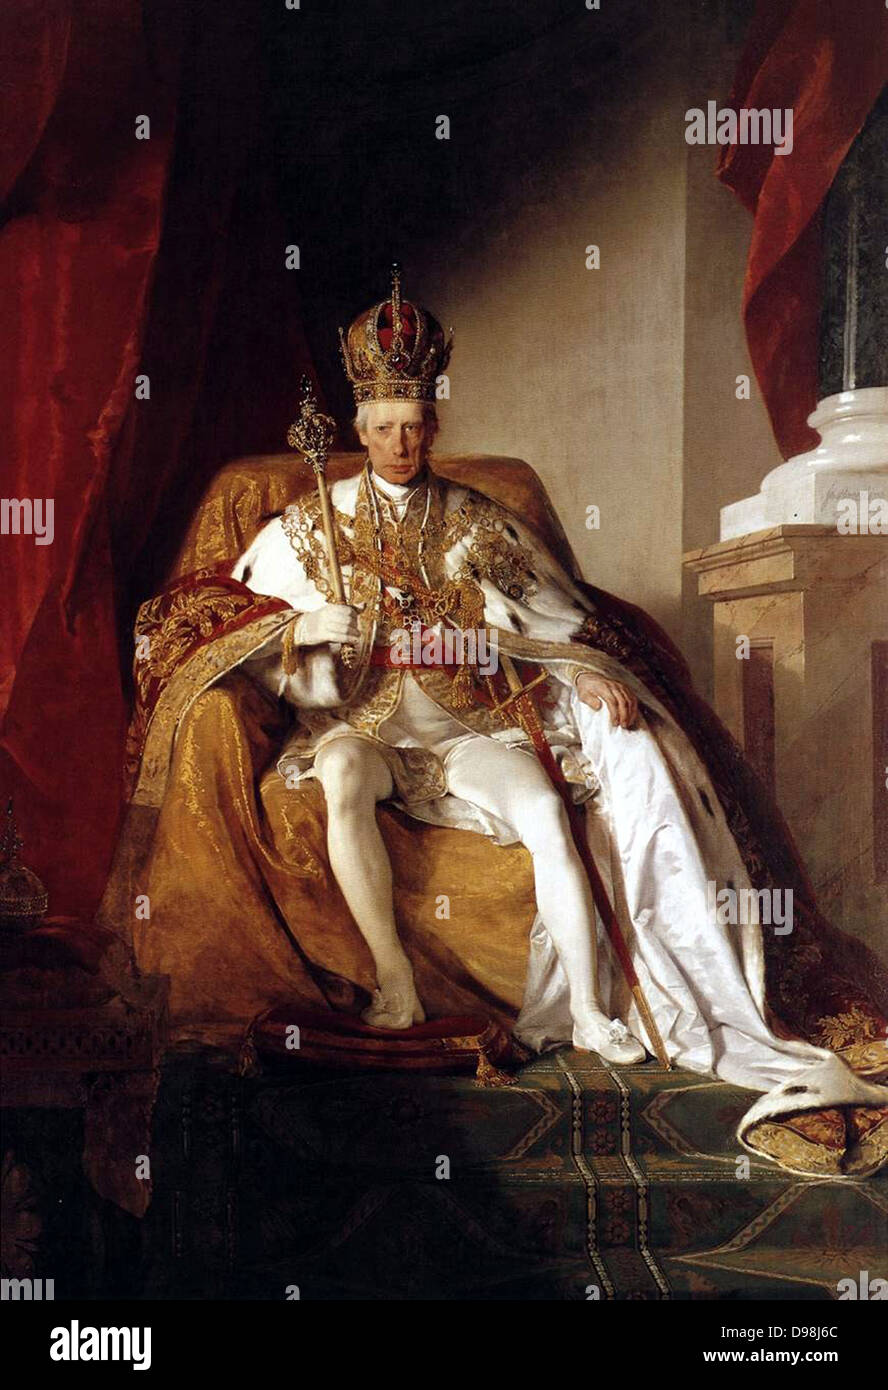 Francesco II (1768 - 2 Marzo 1835). Il re di Ungheria e Croazia. Regnò 1792 - 1835. Imperatore del Sacro Romano Impero. Reign 5 Luglio 1792 - 6 agosto 1806. Governata come Imperatore austriaco 1768-1835. Ritratto formale di Friedrich von Amerling (1803-1887) Foto Stock